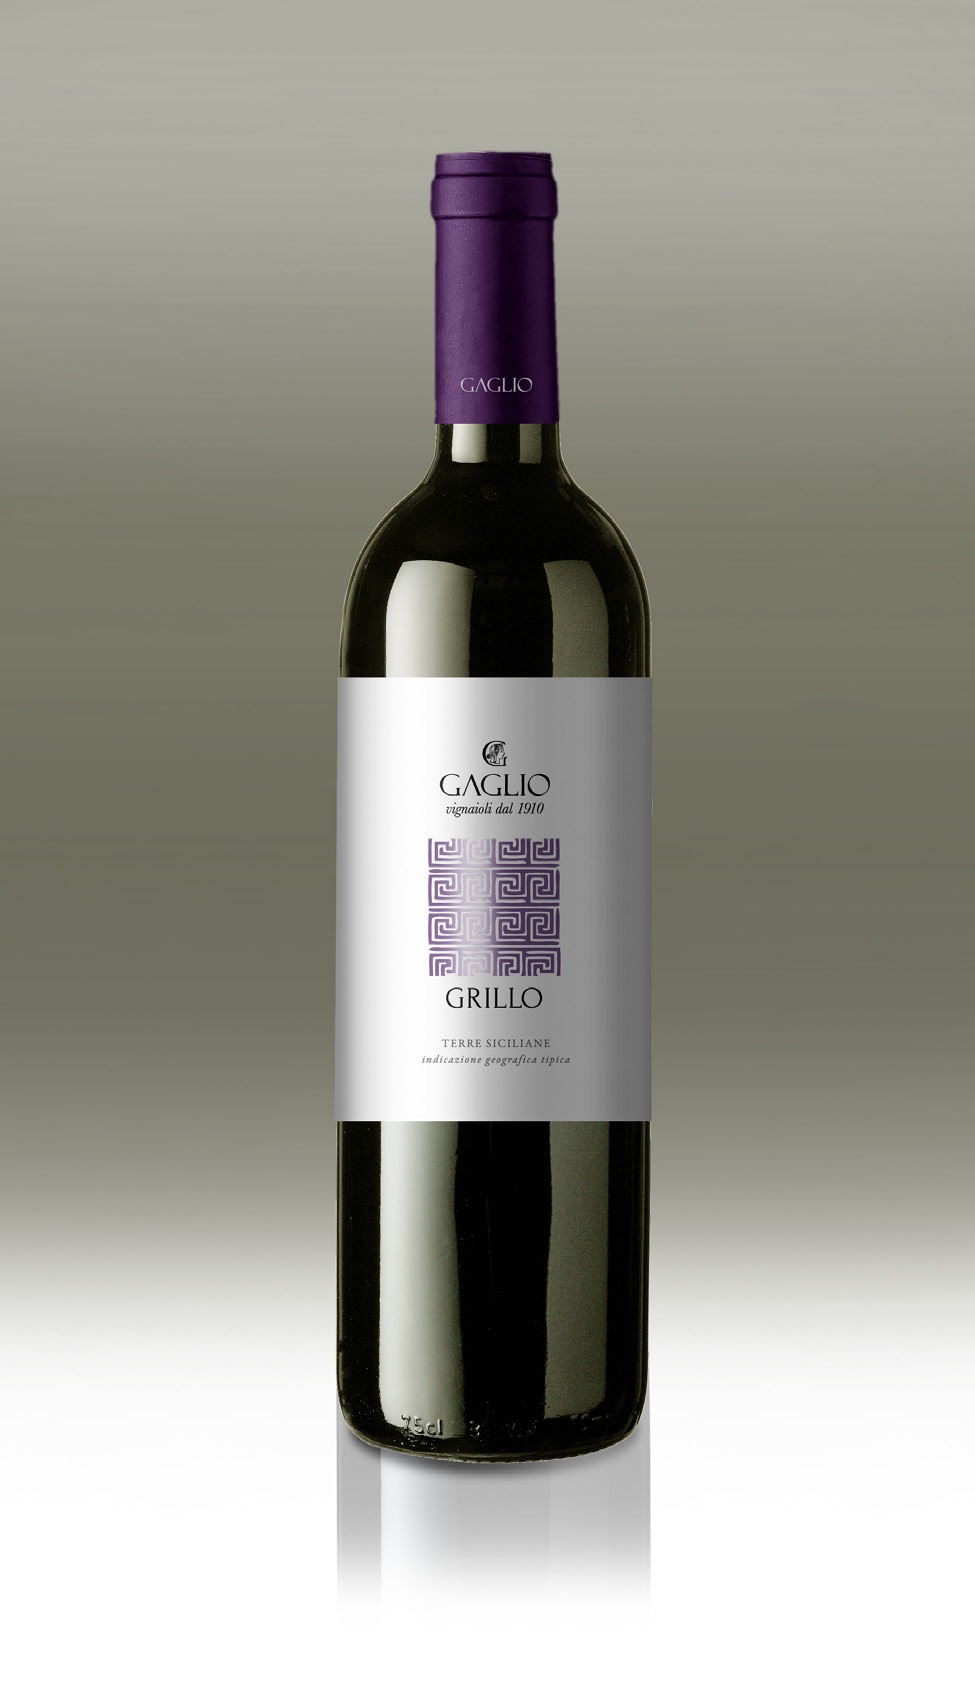 Grillo - Vini Gaglio